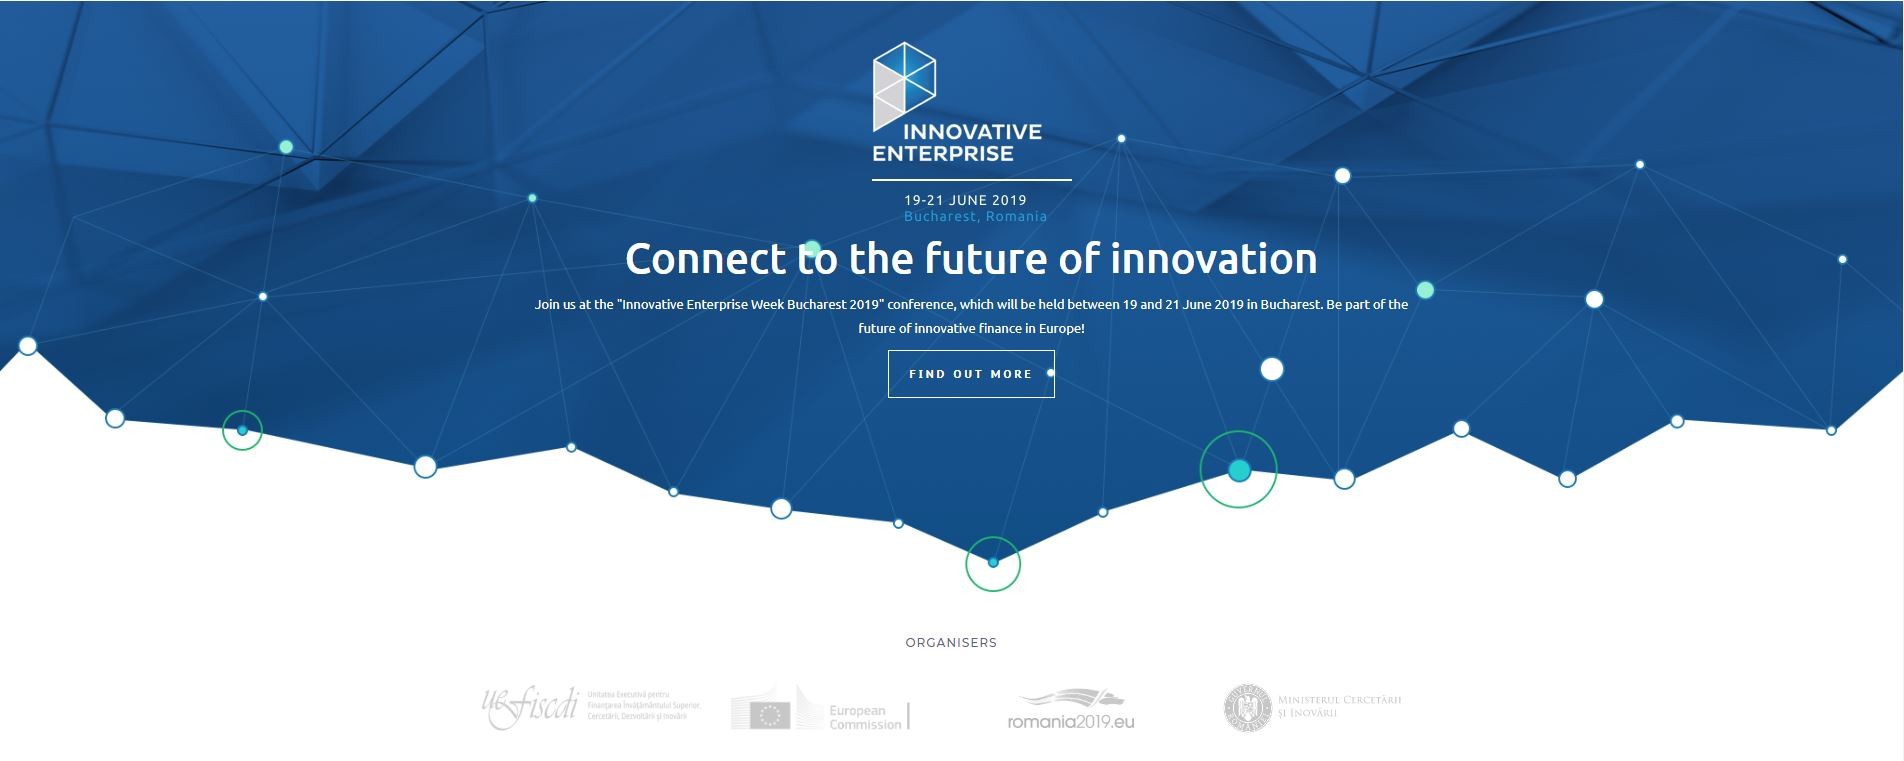 Innovative enterprise- 19-21 iunie 2019, Bucuresti